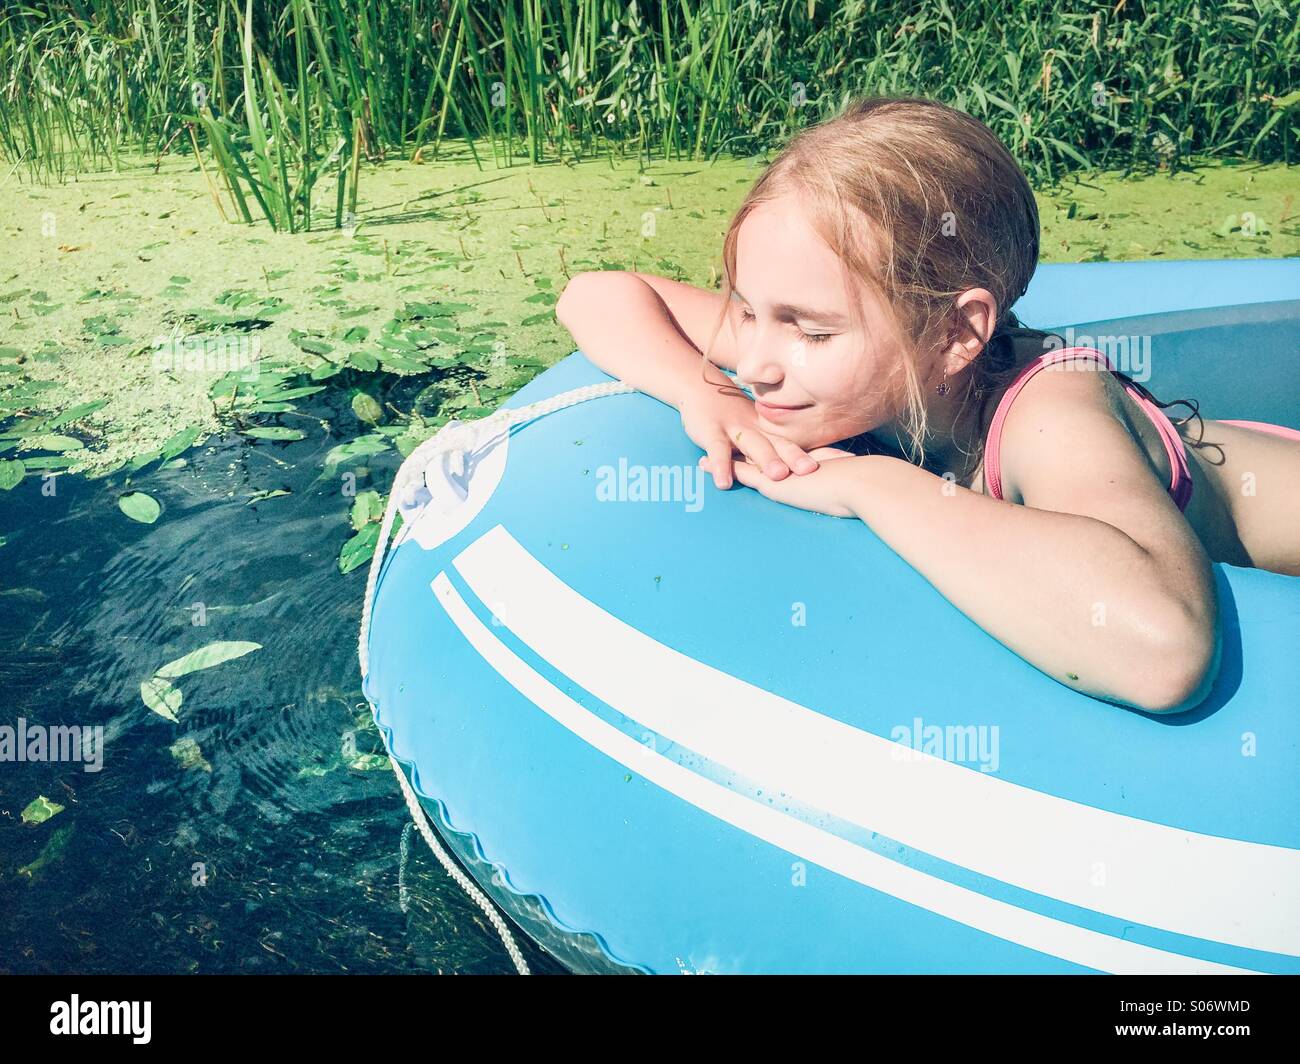 Petite fille assise dans un radeau sur une rivière avec un écrin de verdure Banque D'Images